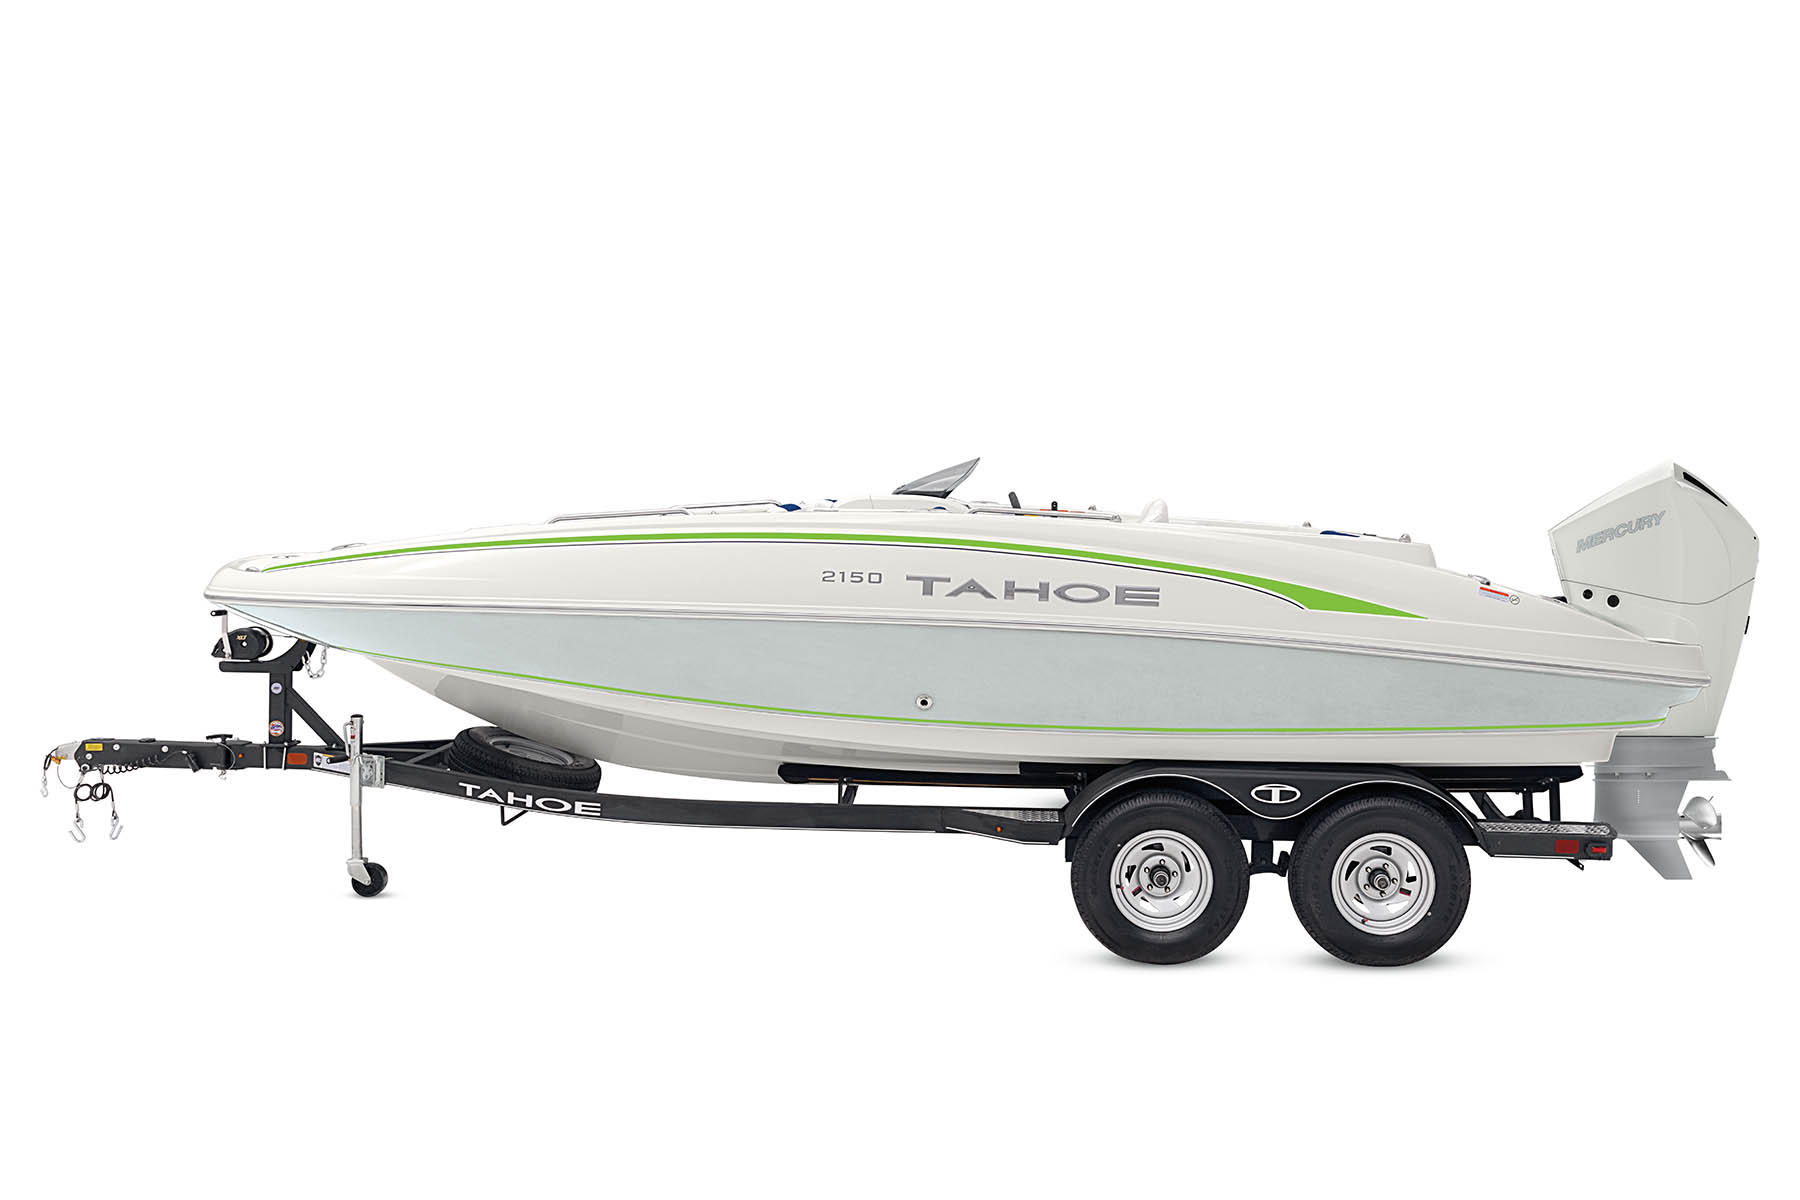 2150 - TAHOE Outboard Deck Boat